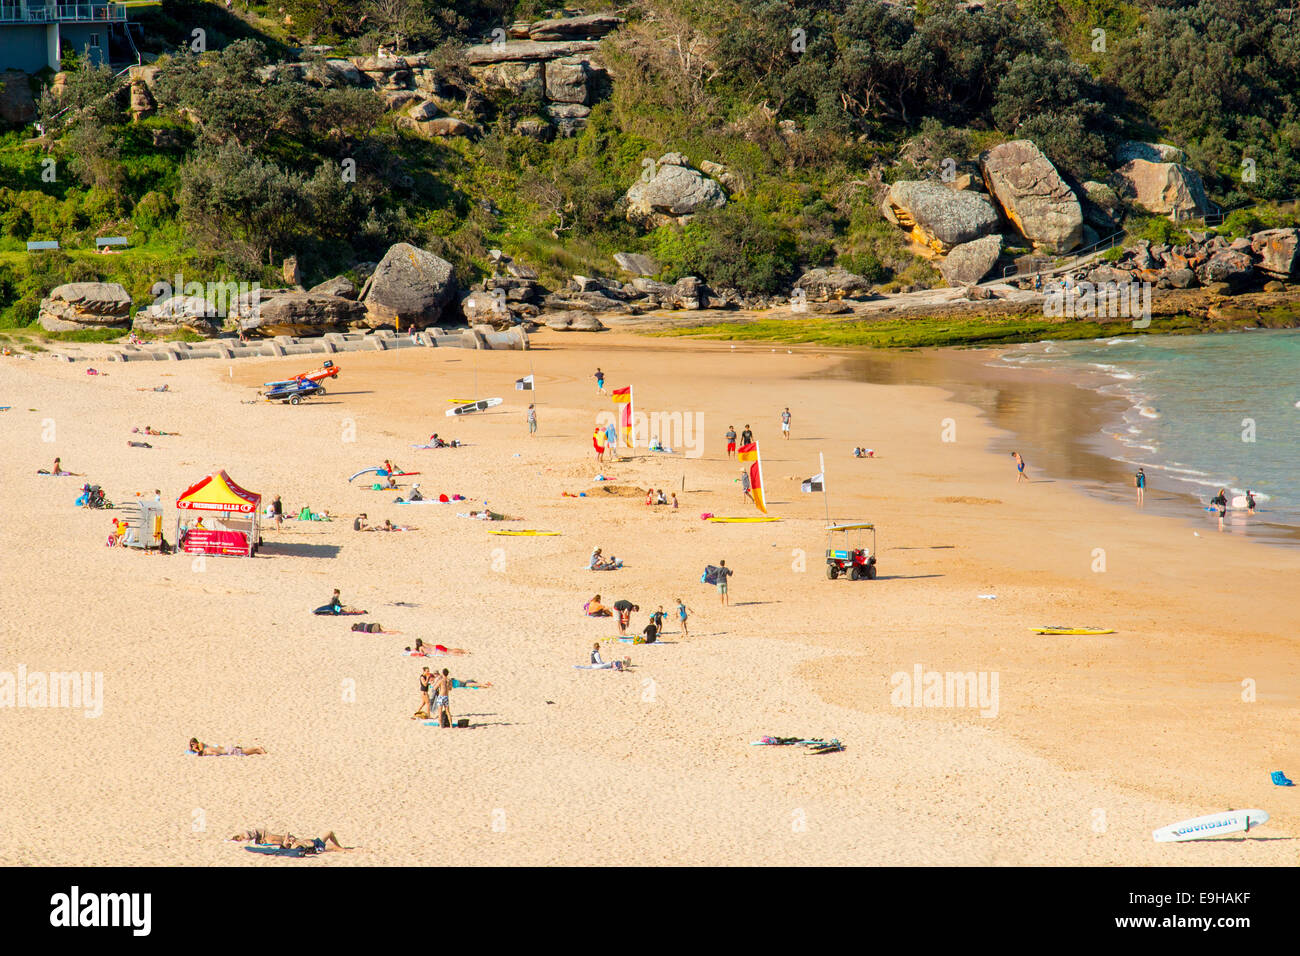 Plage d'eau douce, l'une des plages du nord de Sydney, printemps, New South Wales Australie Banque D'Images